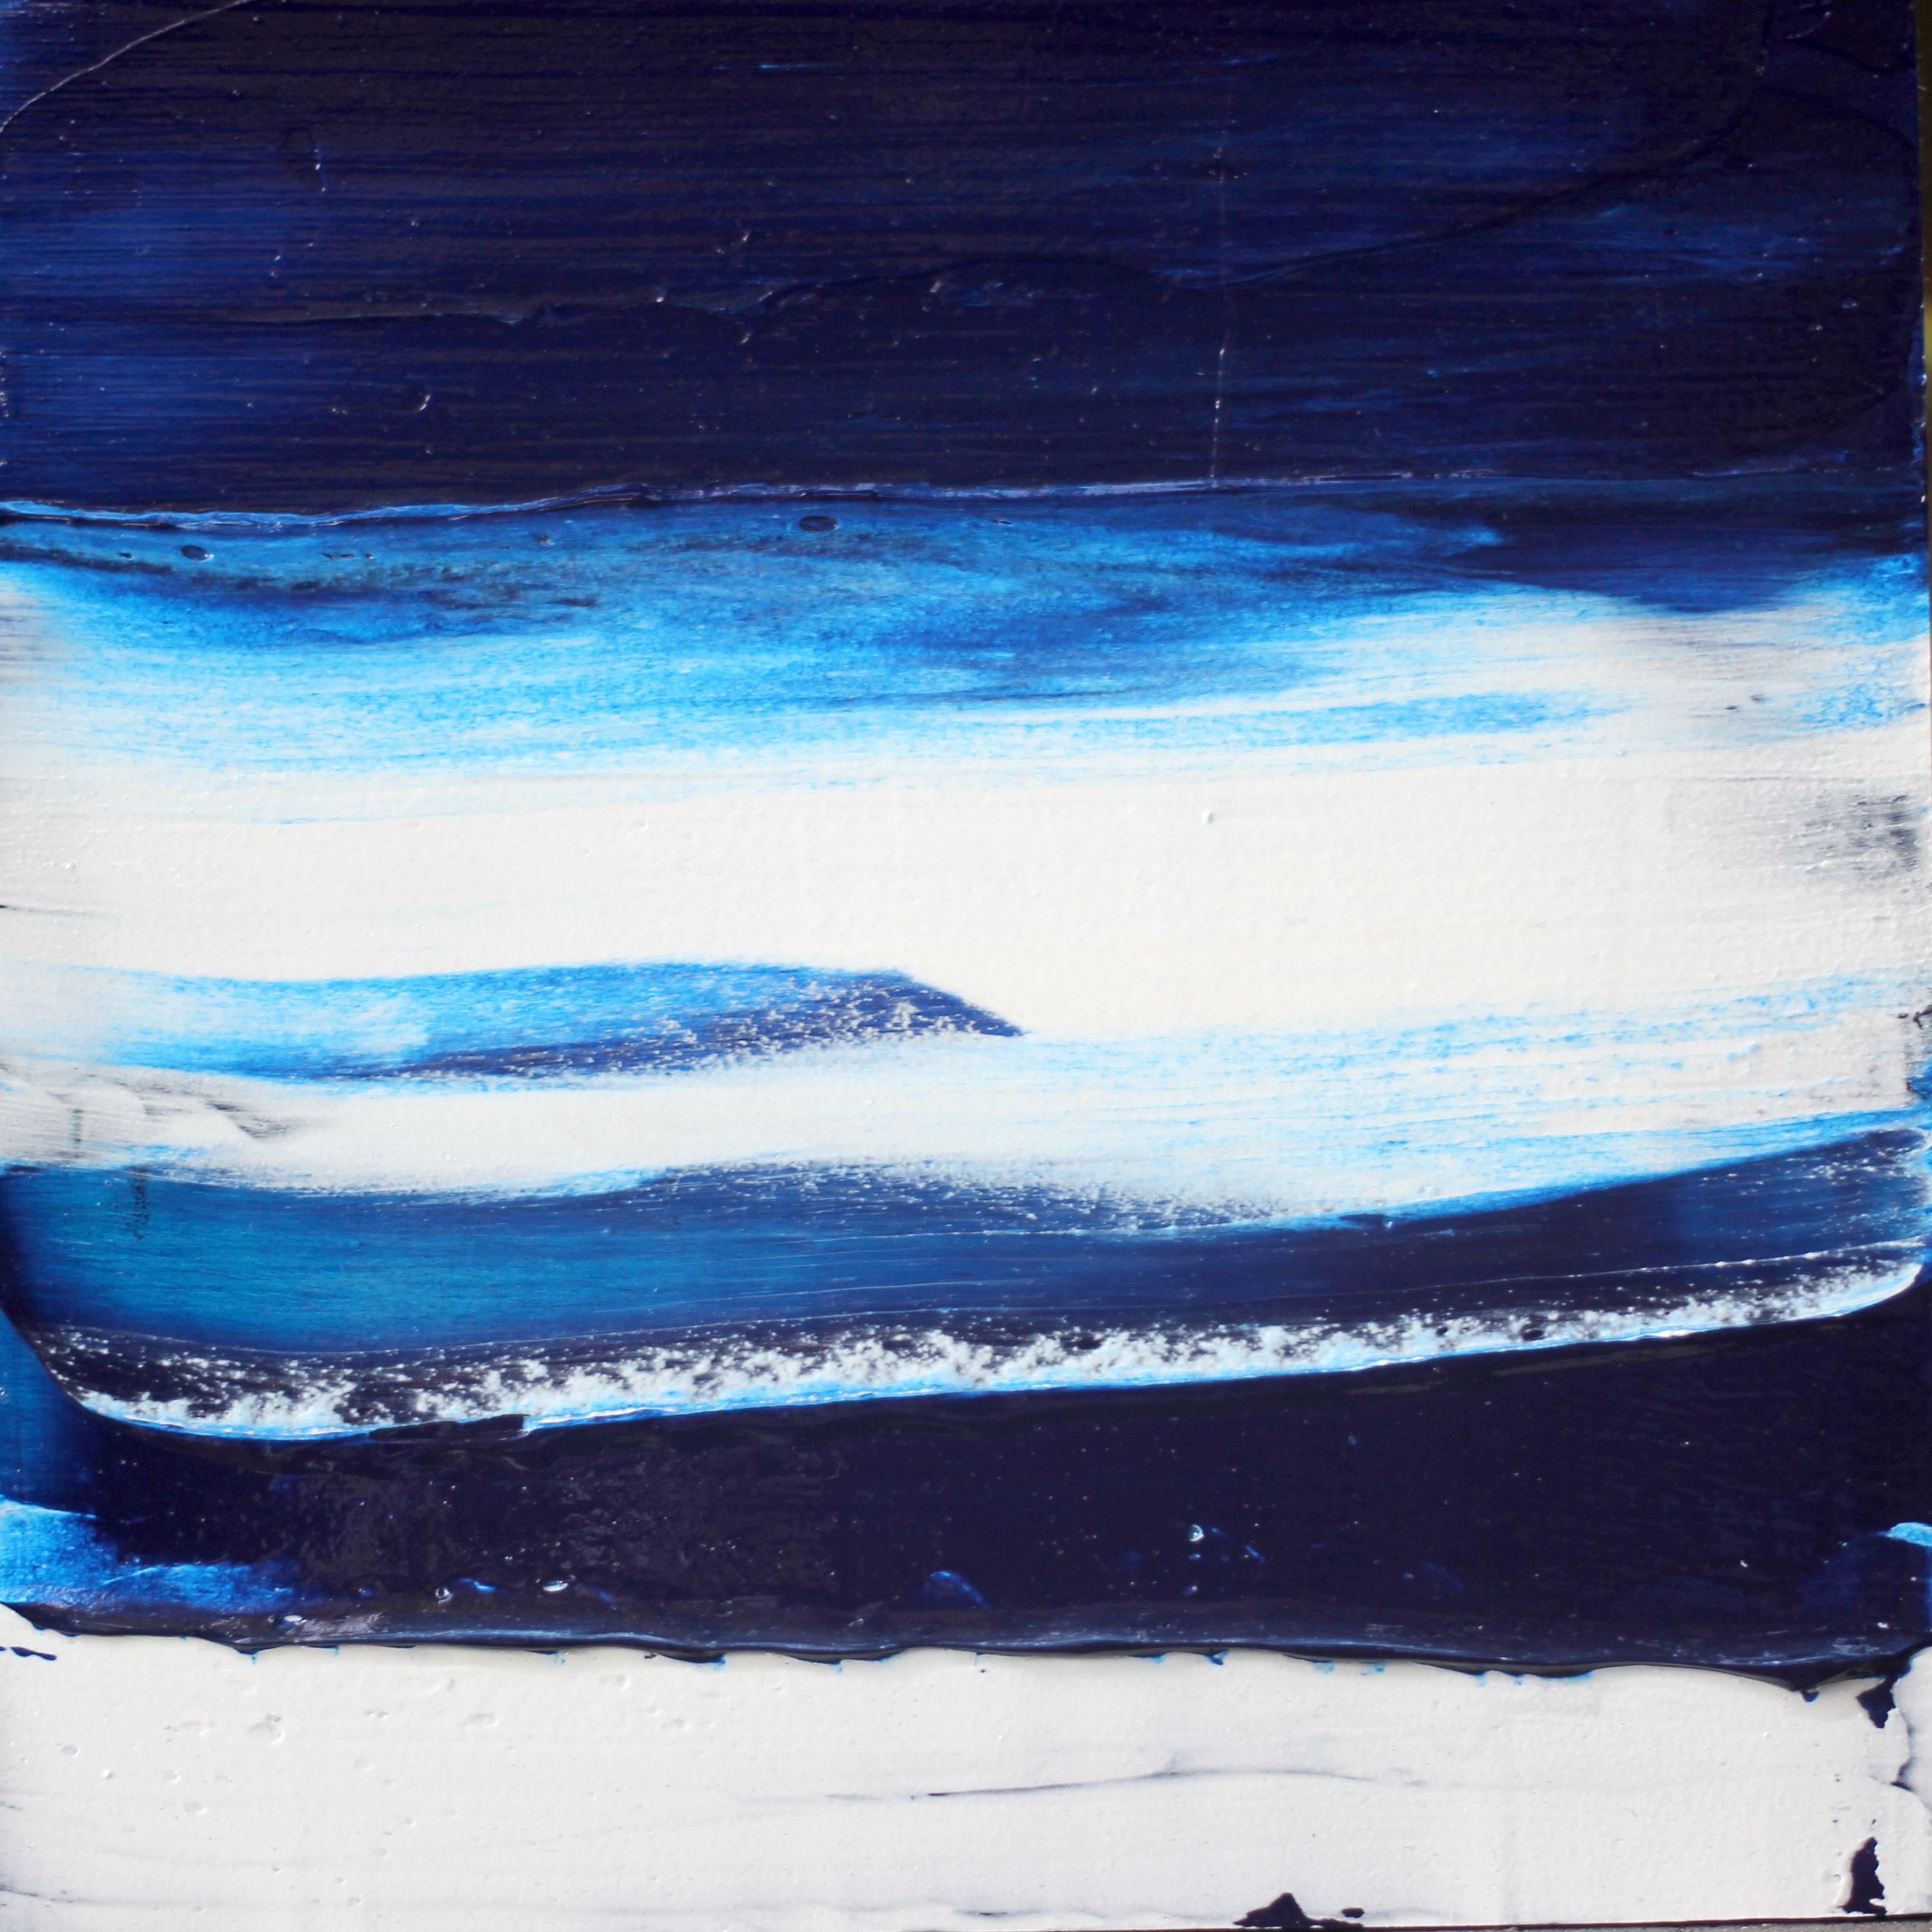 Abstract Painting Christie Owen - "Elements 3085" Composition abstraite en couches de médias mixtes sur panneau de bouleau baltique